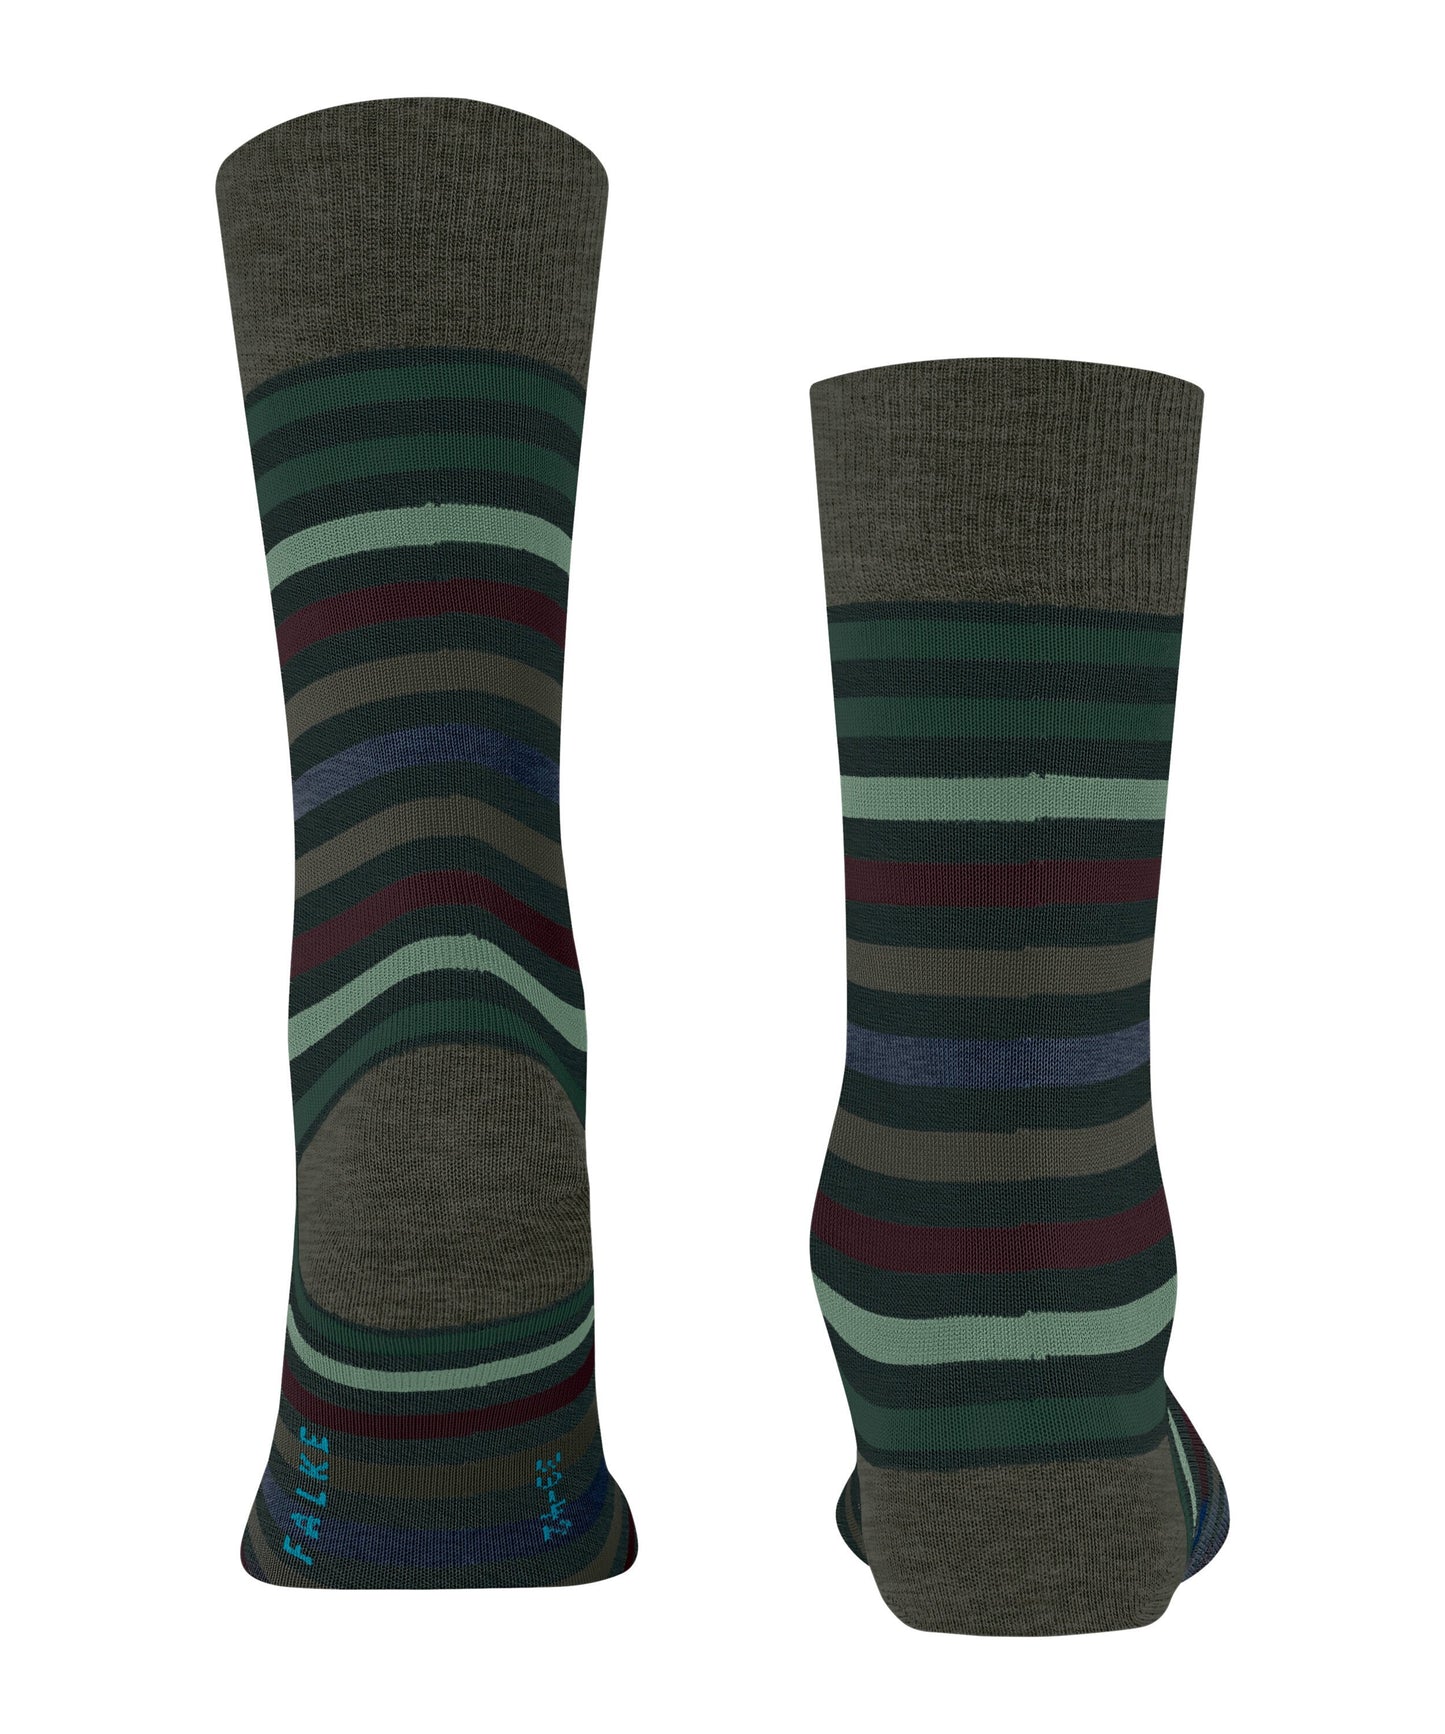 FALKE Tinted Stripe Herren Socken (Wald)